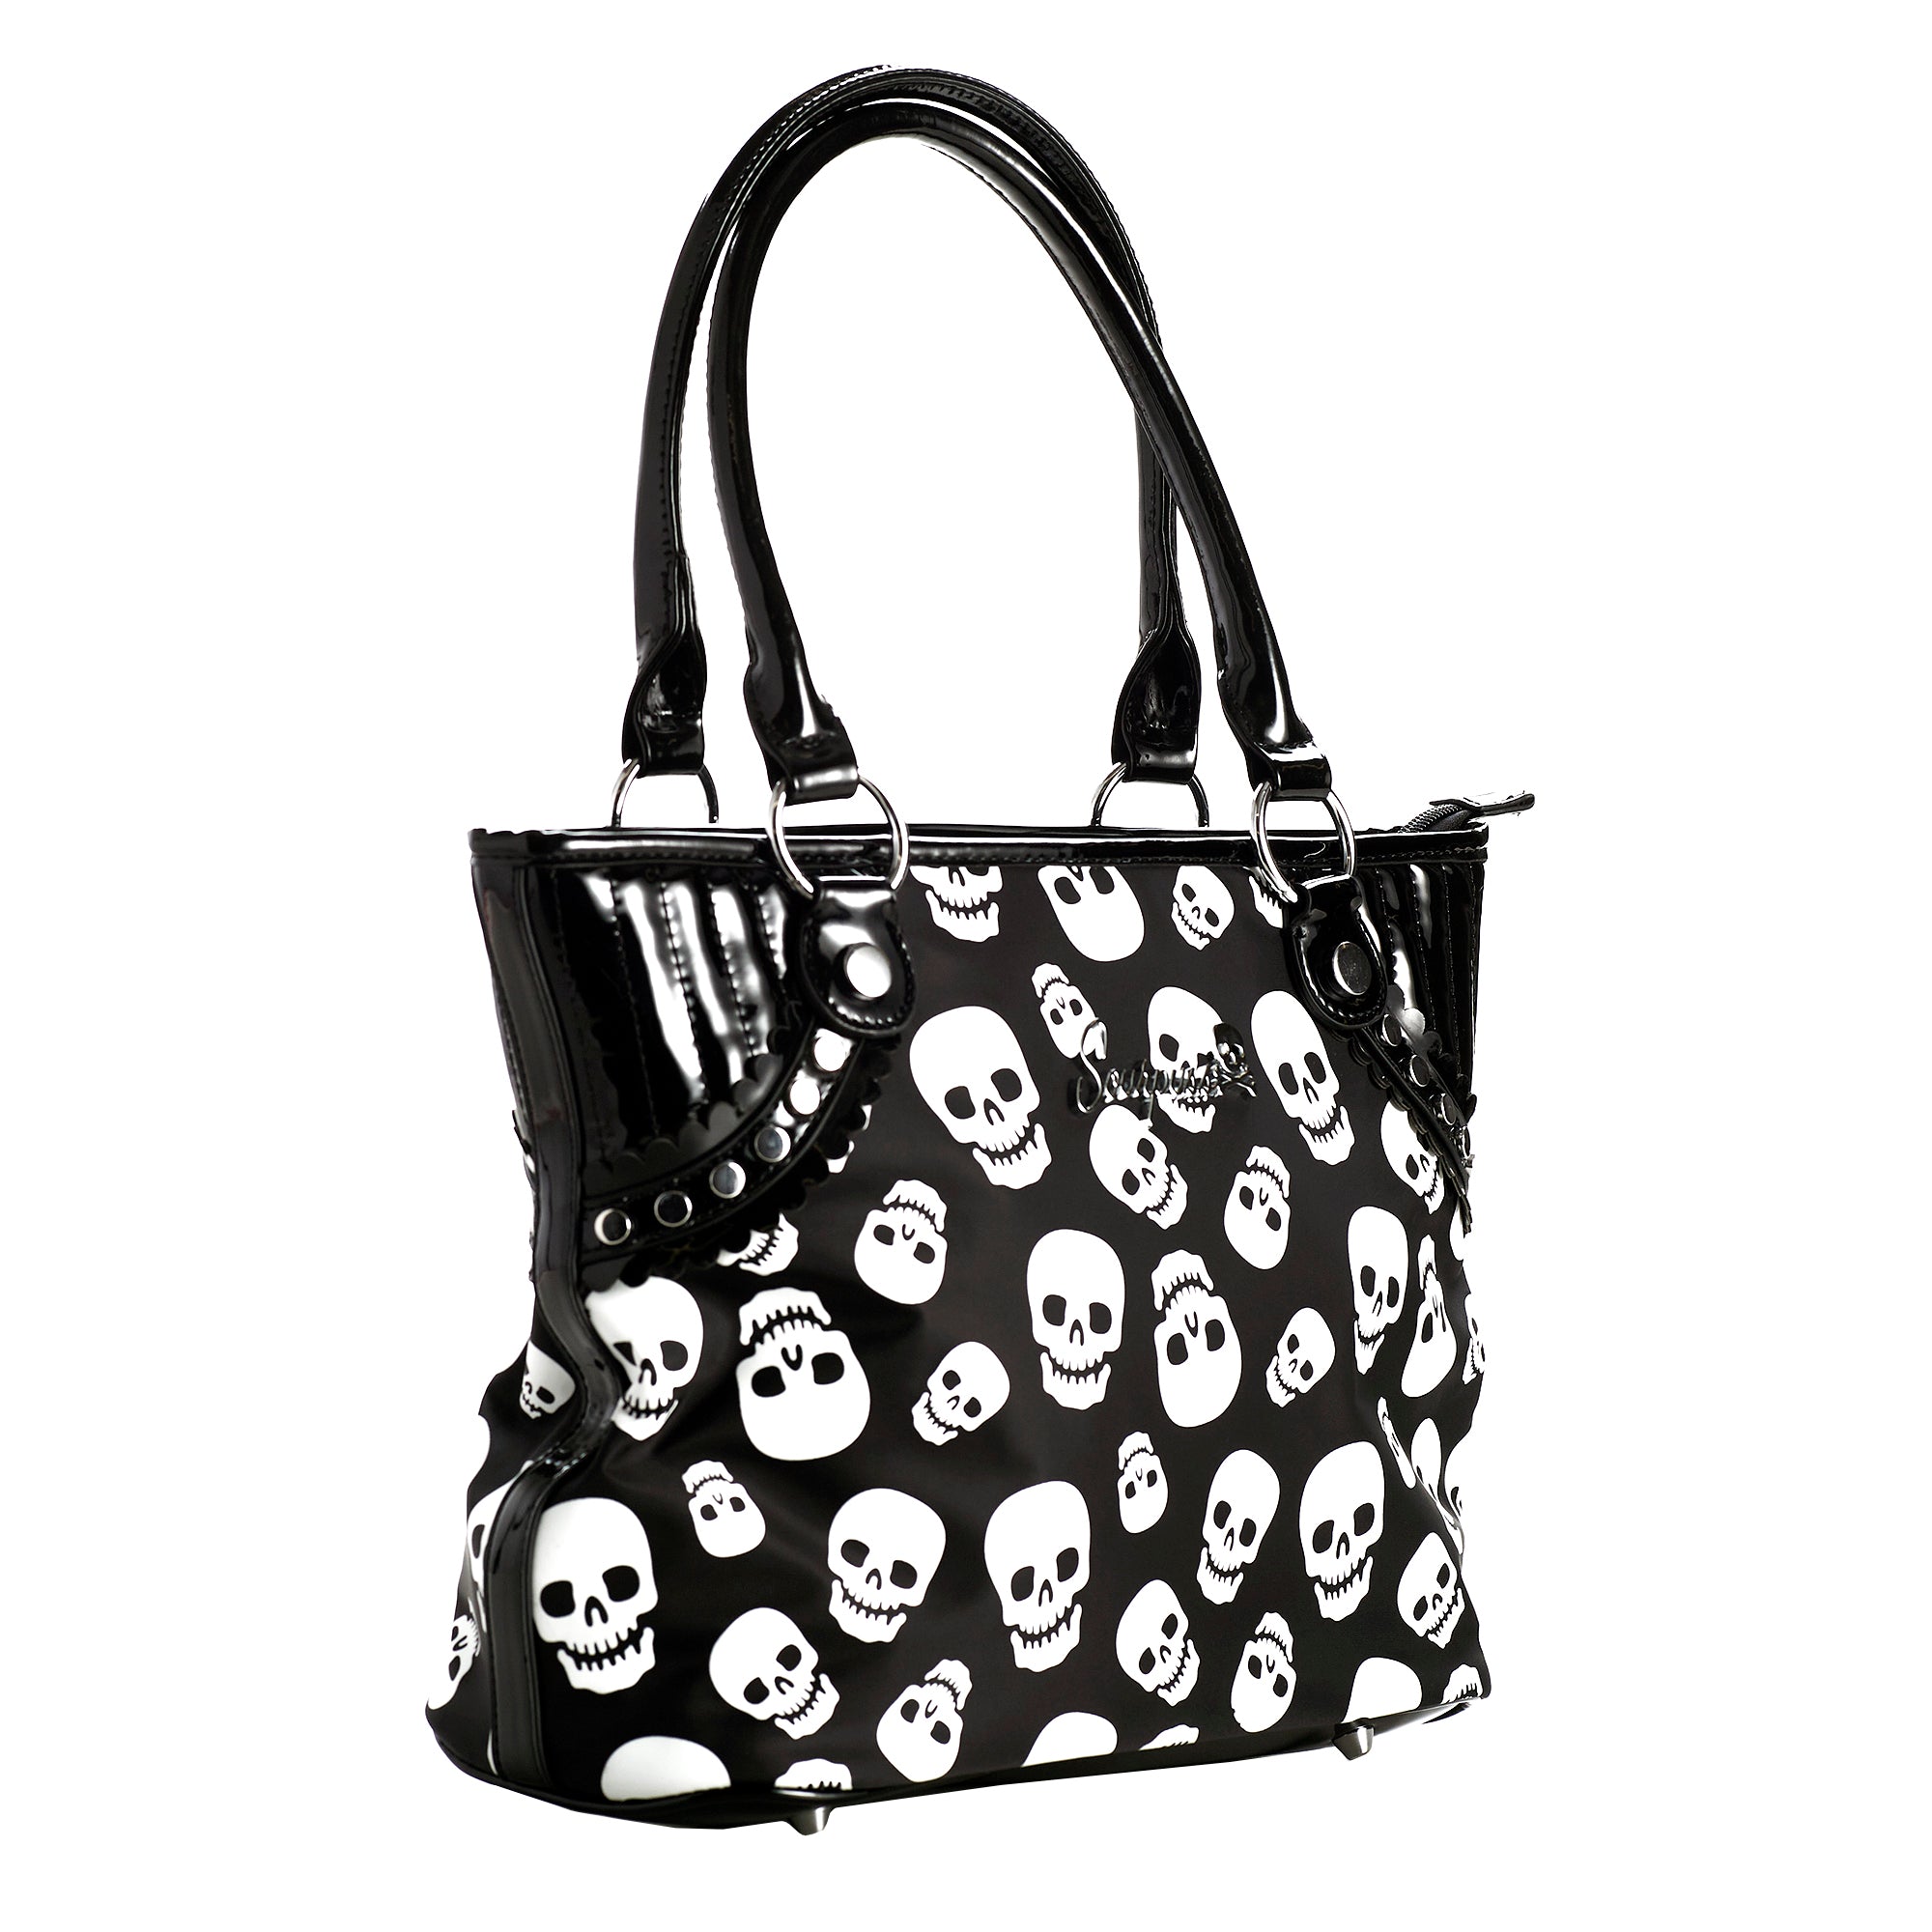 Skull Beaded Bags & Handbags for Women for sale | eBay